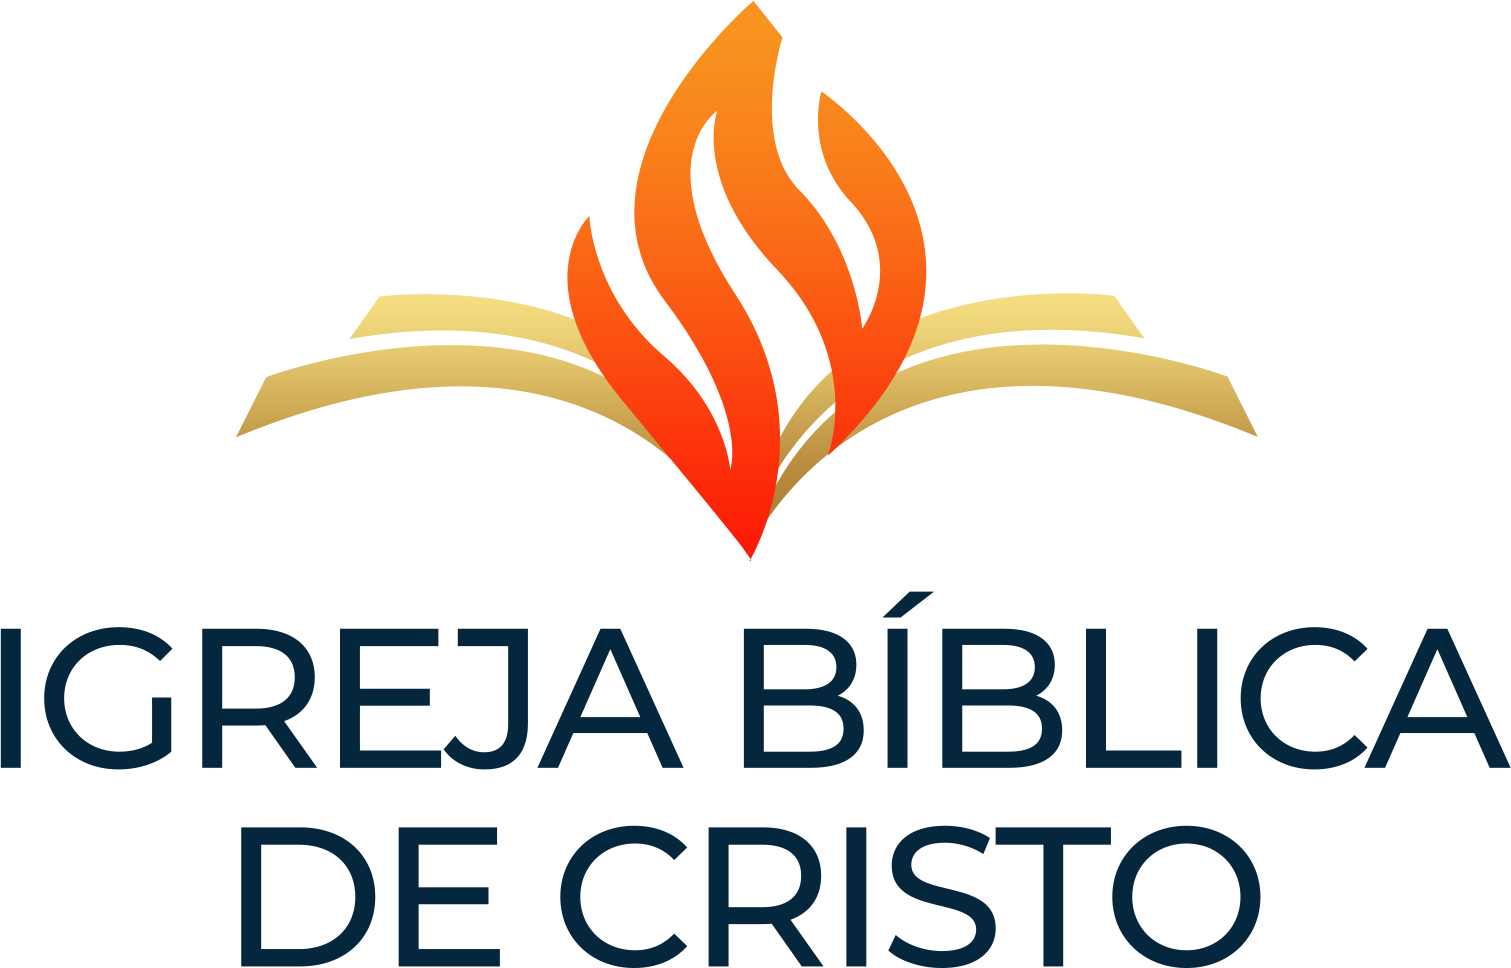 Igreja Bíblica de Cristo